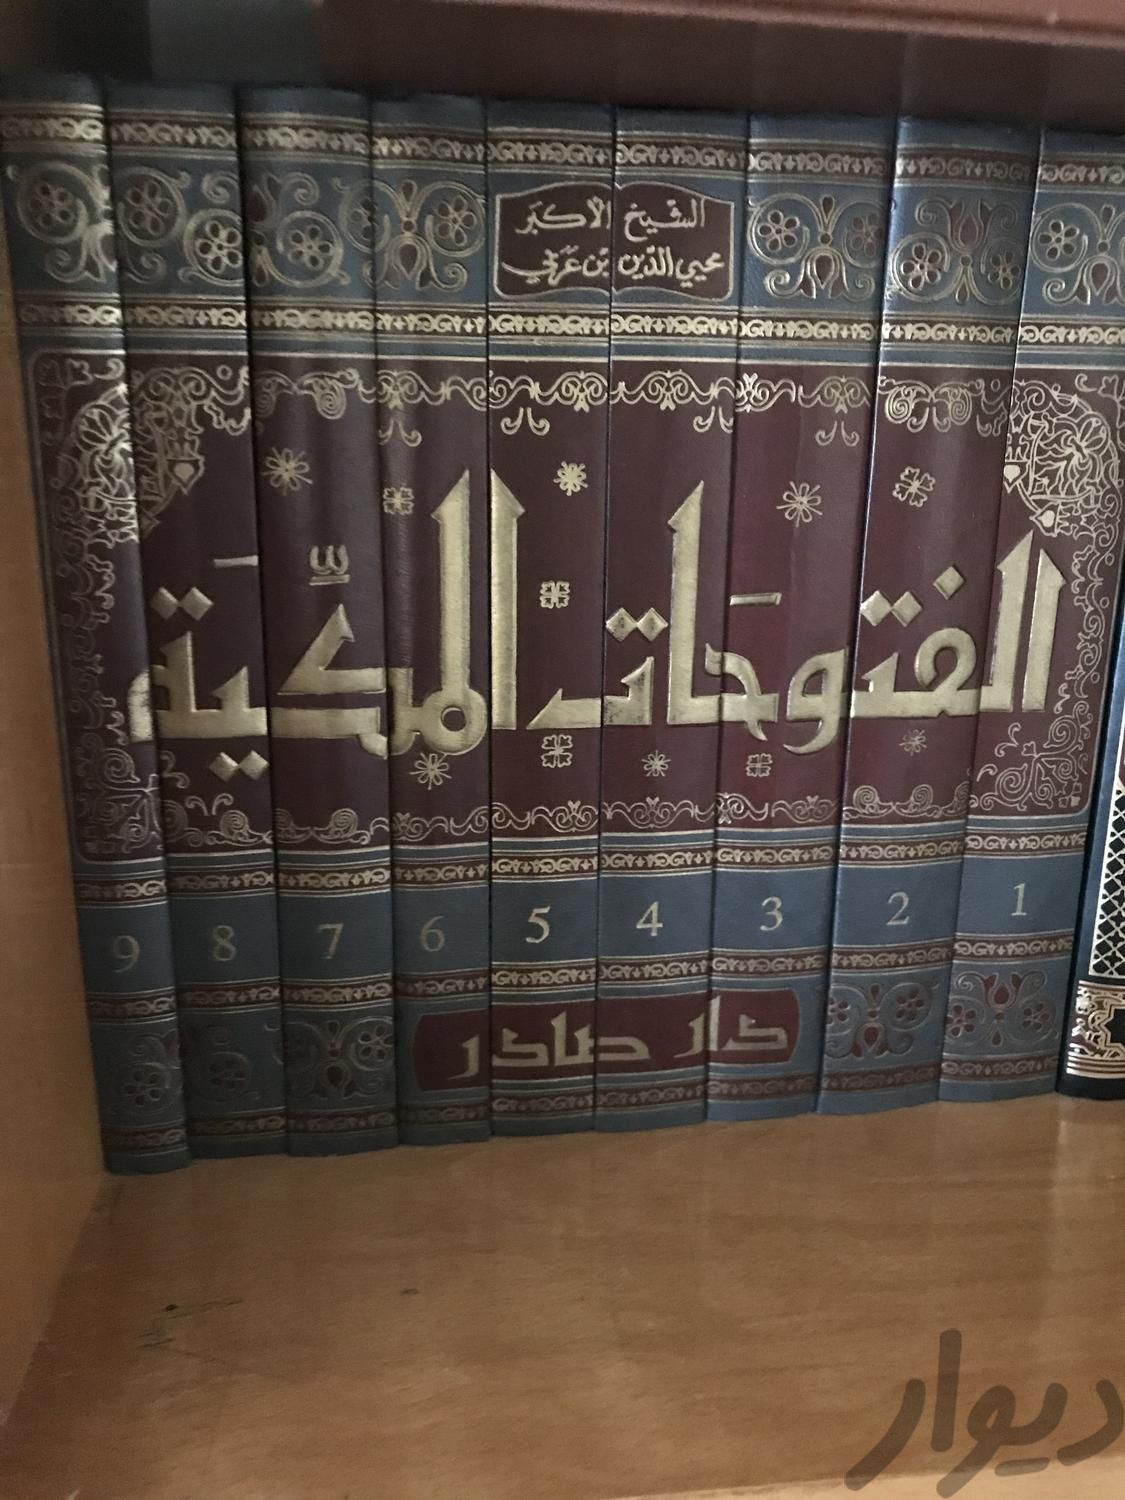 کتاب مثنوی و دیوان شمس و حافظ وسعدی و فتوحات مکیه|کتاب و مجله ادبی|تهران, شهرآرا|دیوار